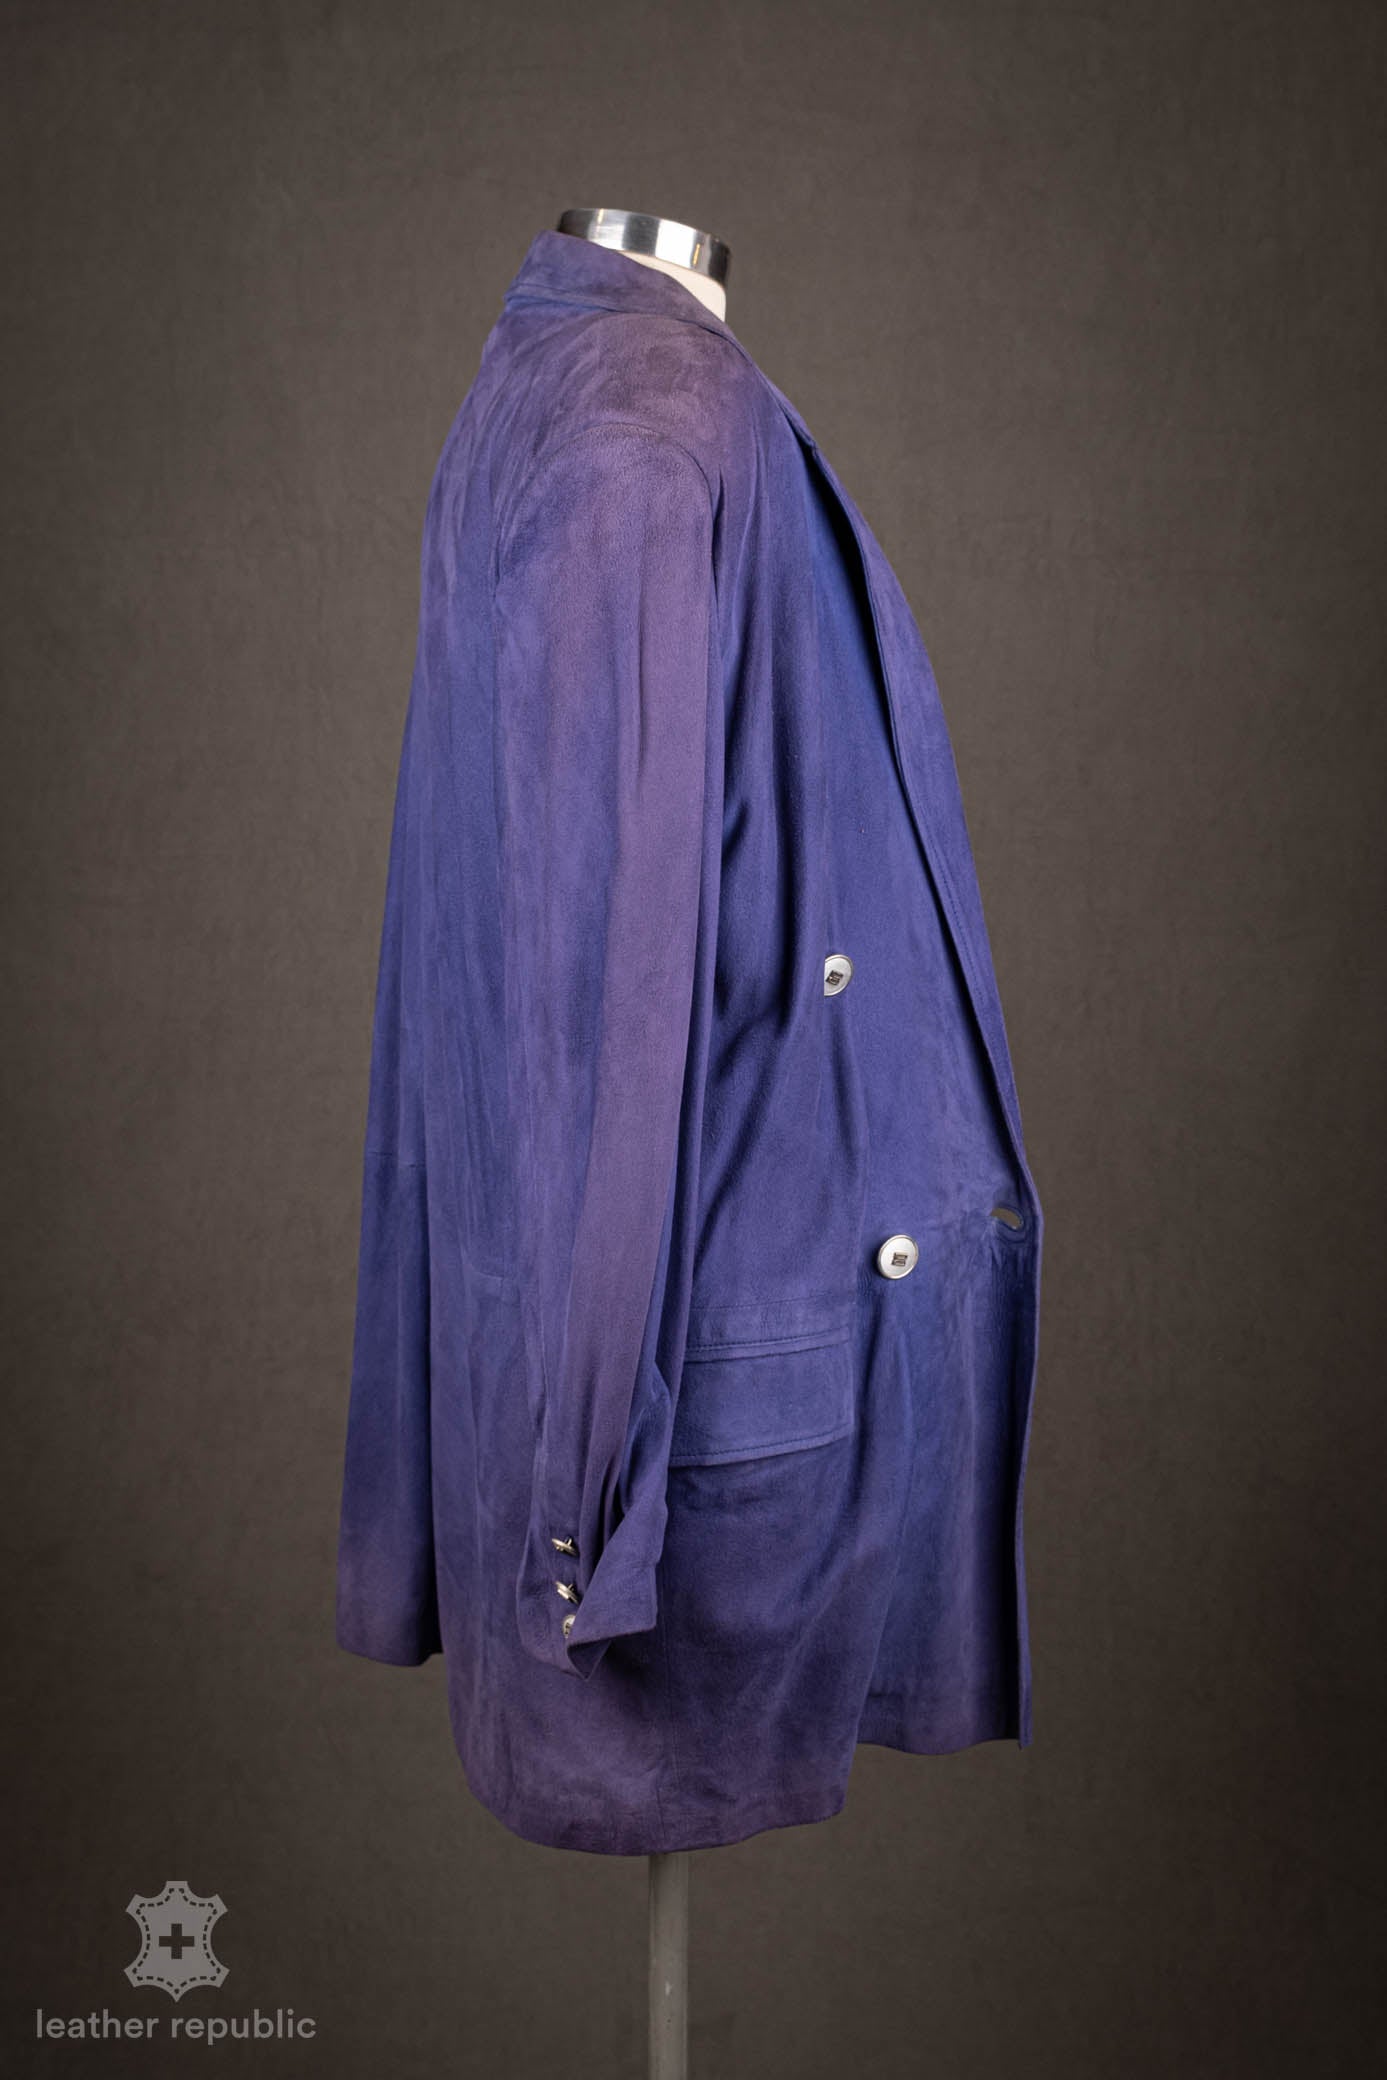 Damen Lederjacke (Ziege), blau/purple, Grösse 42/XL